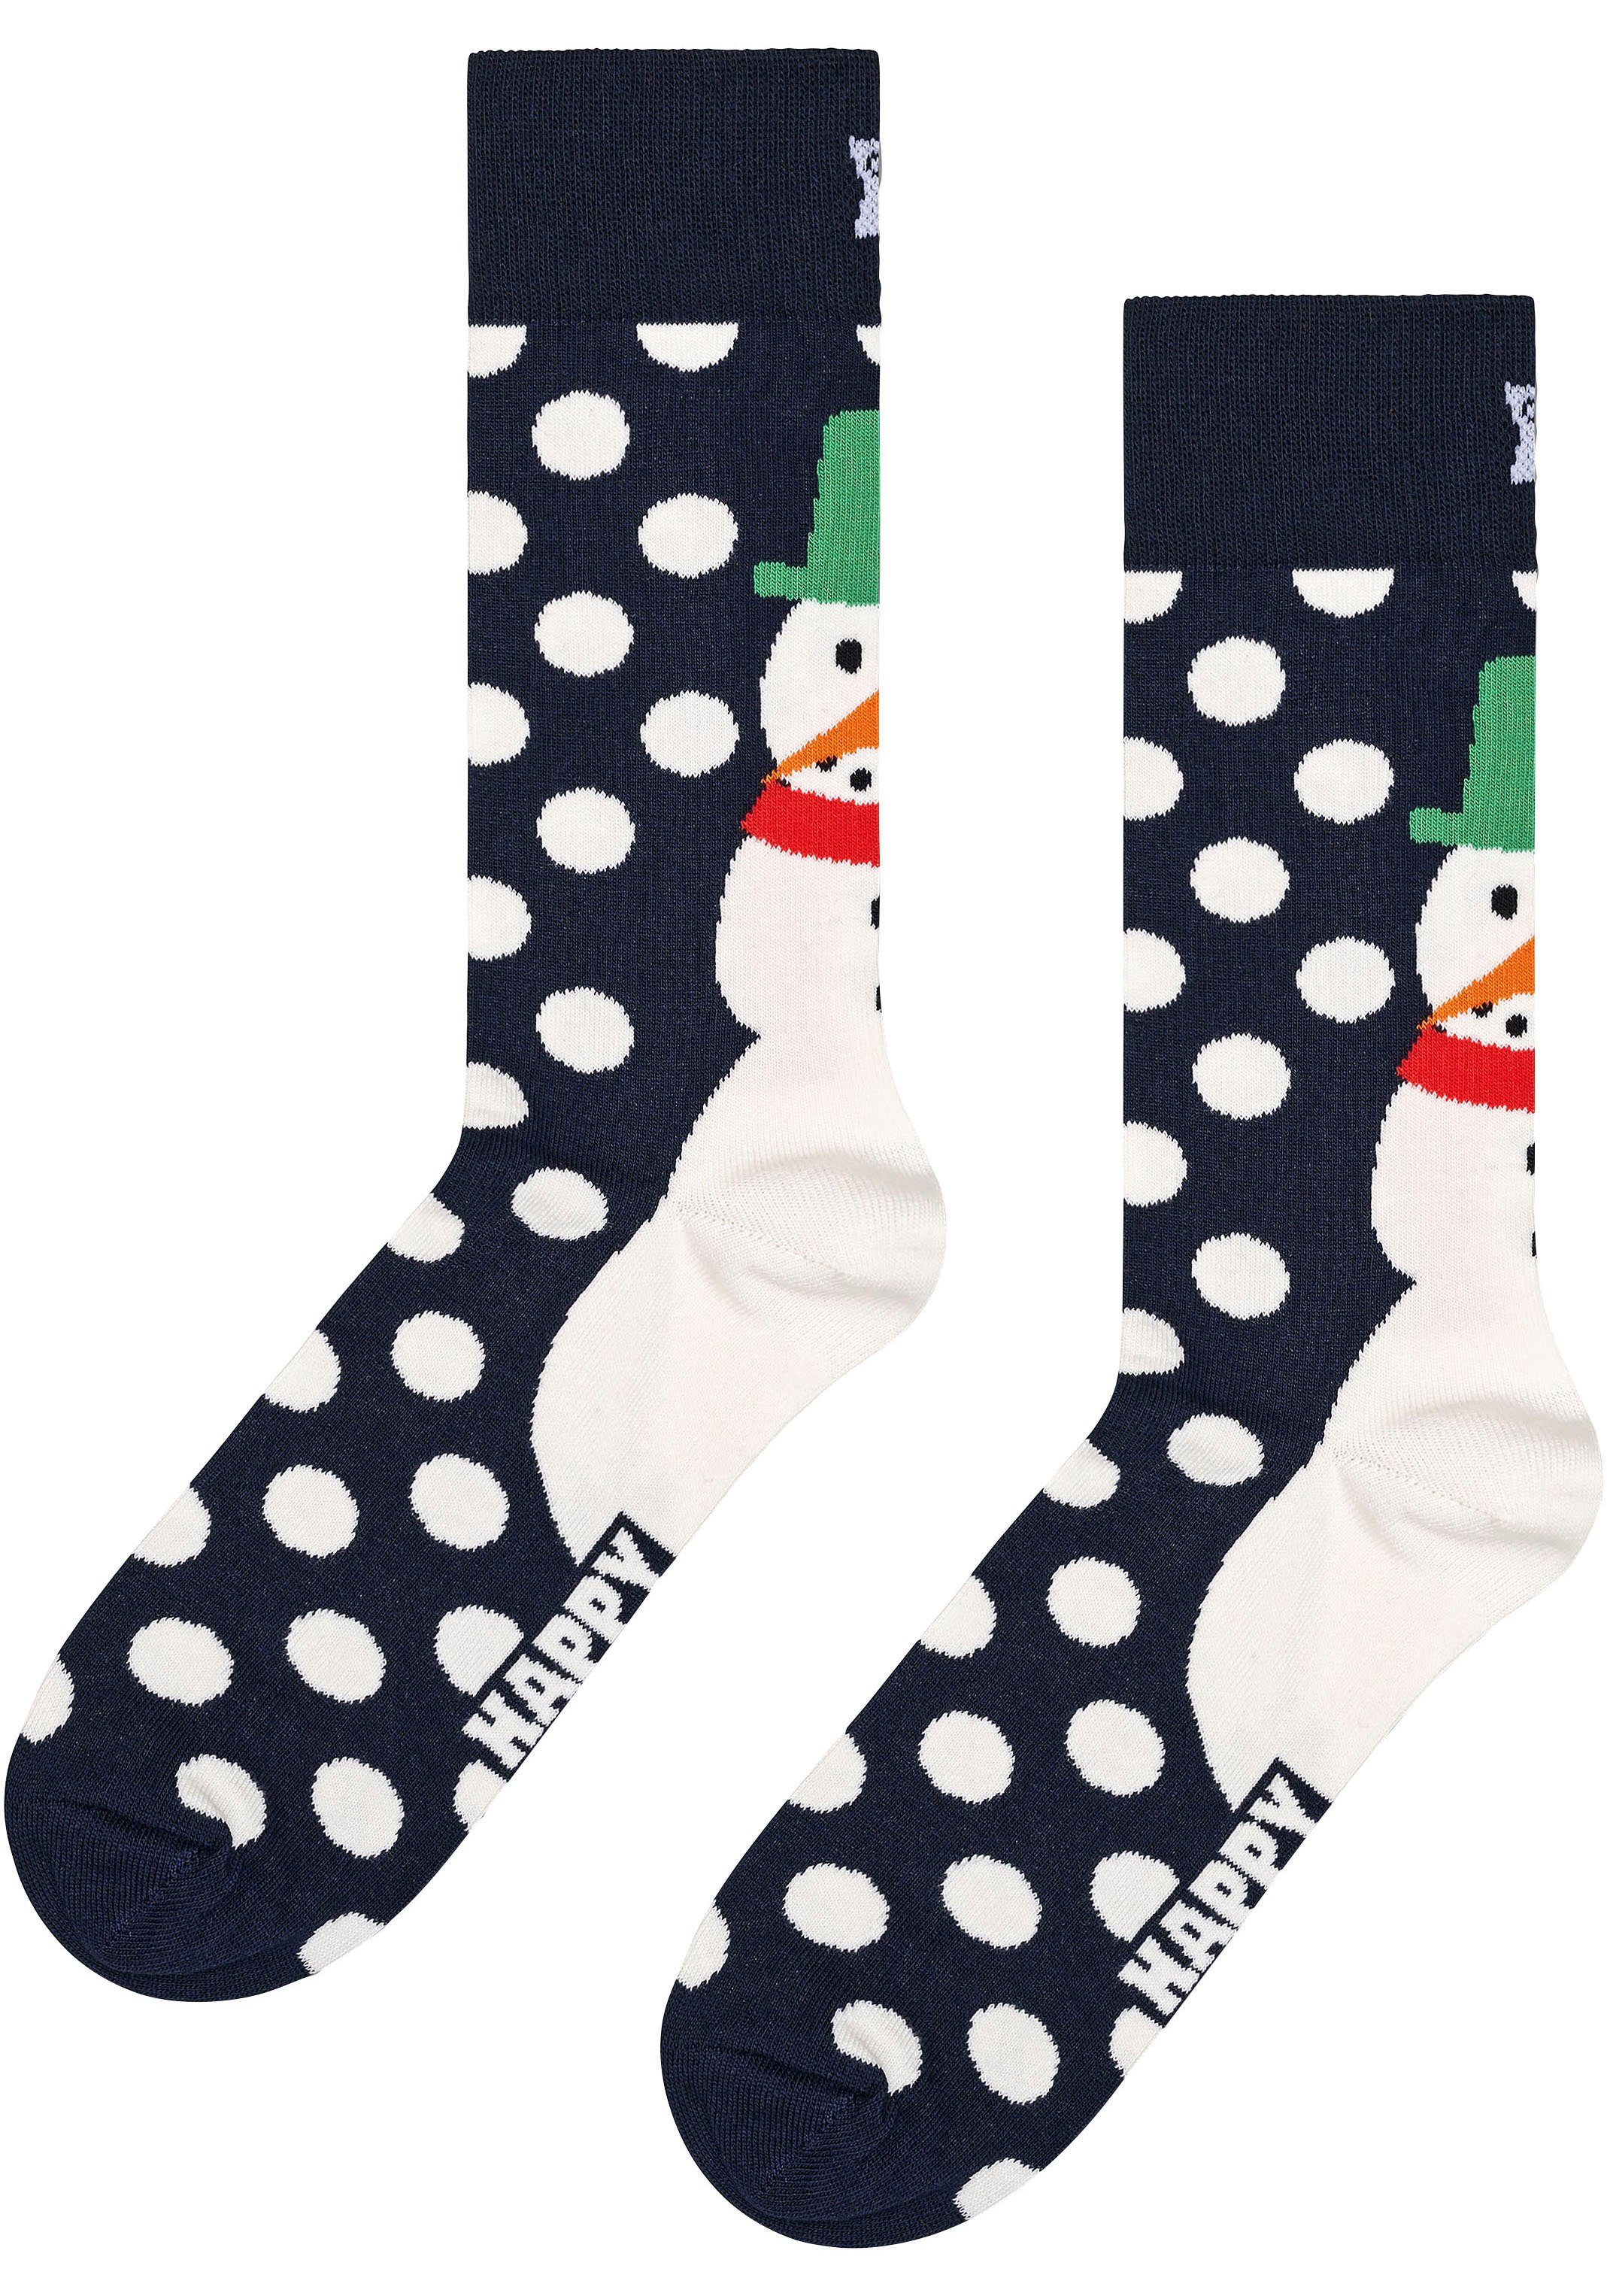 Socks Gift 2 Box Snowman Snowman (3-Paar) Socken Happy